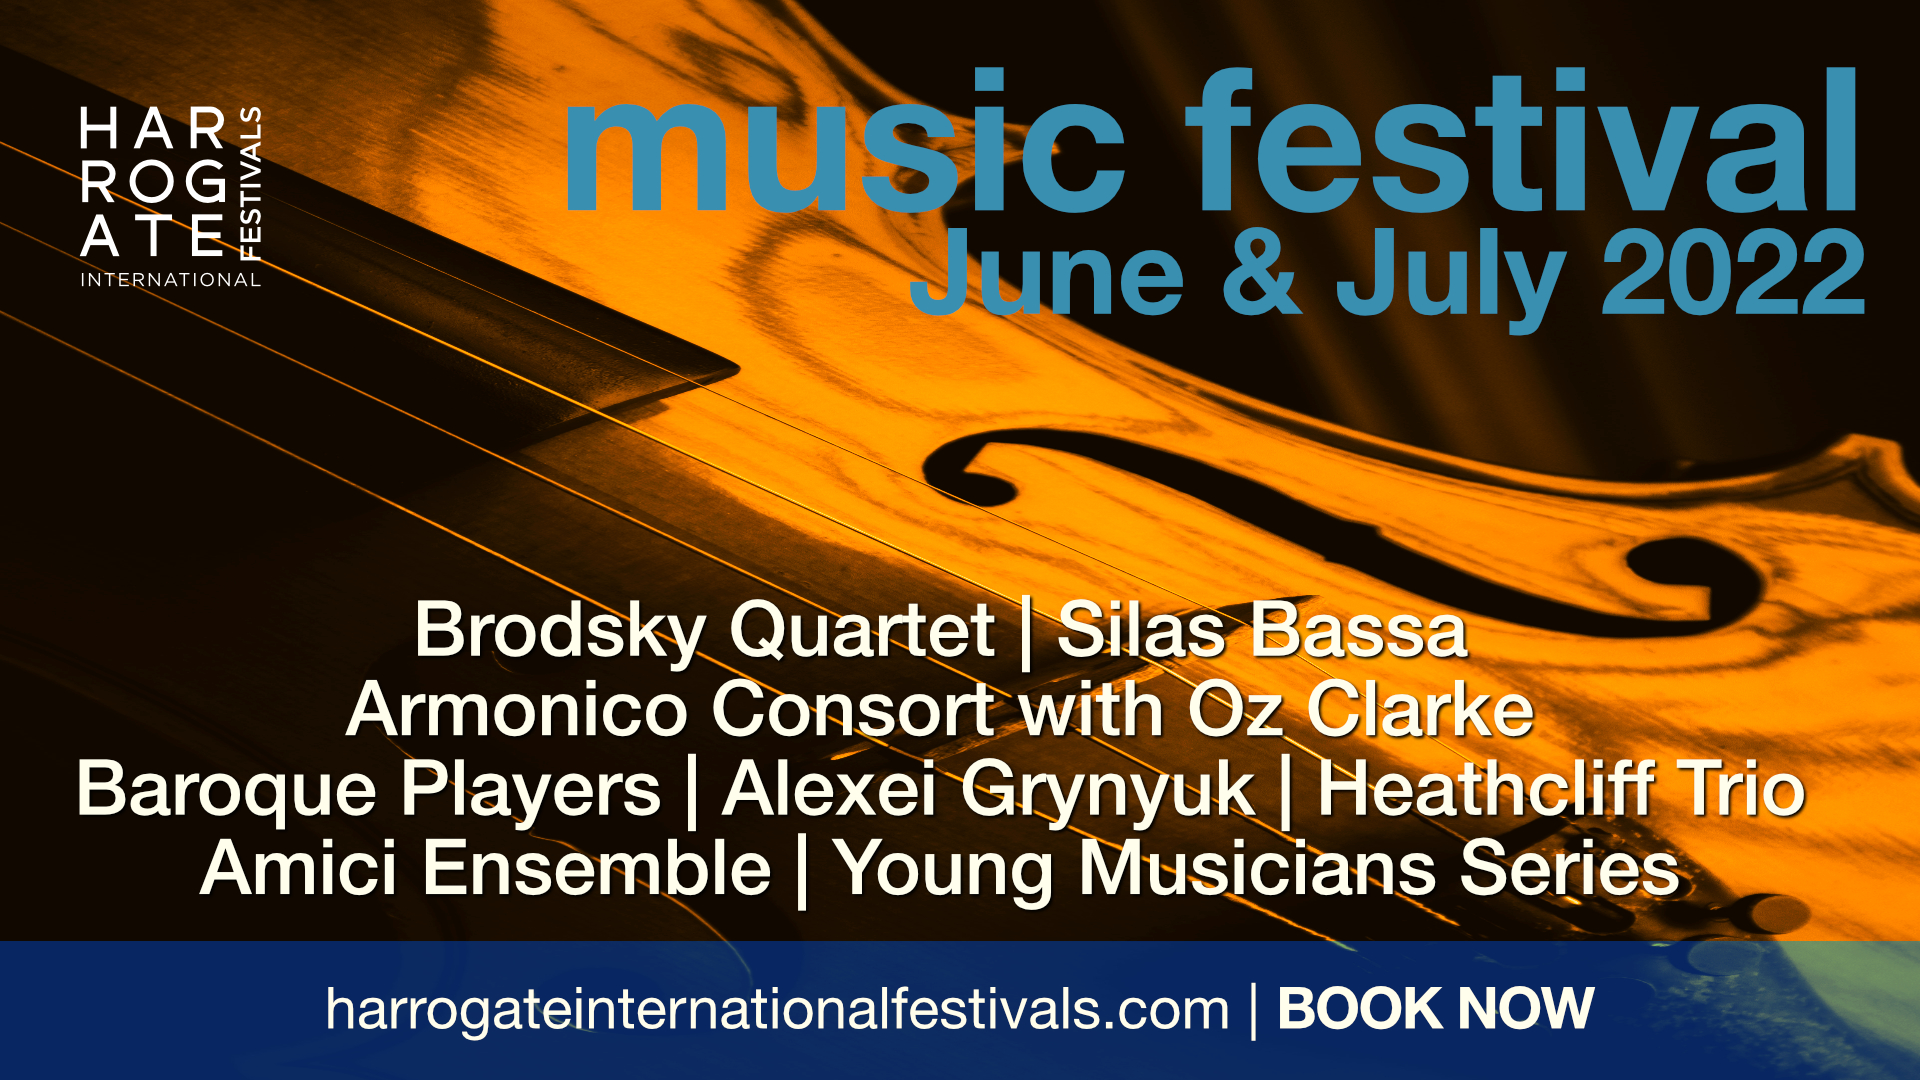 Harrogate Music Festival June & July 2022